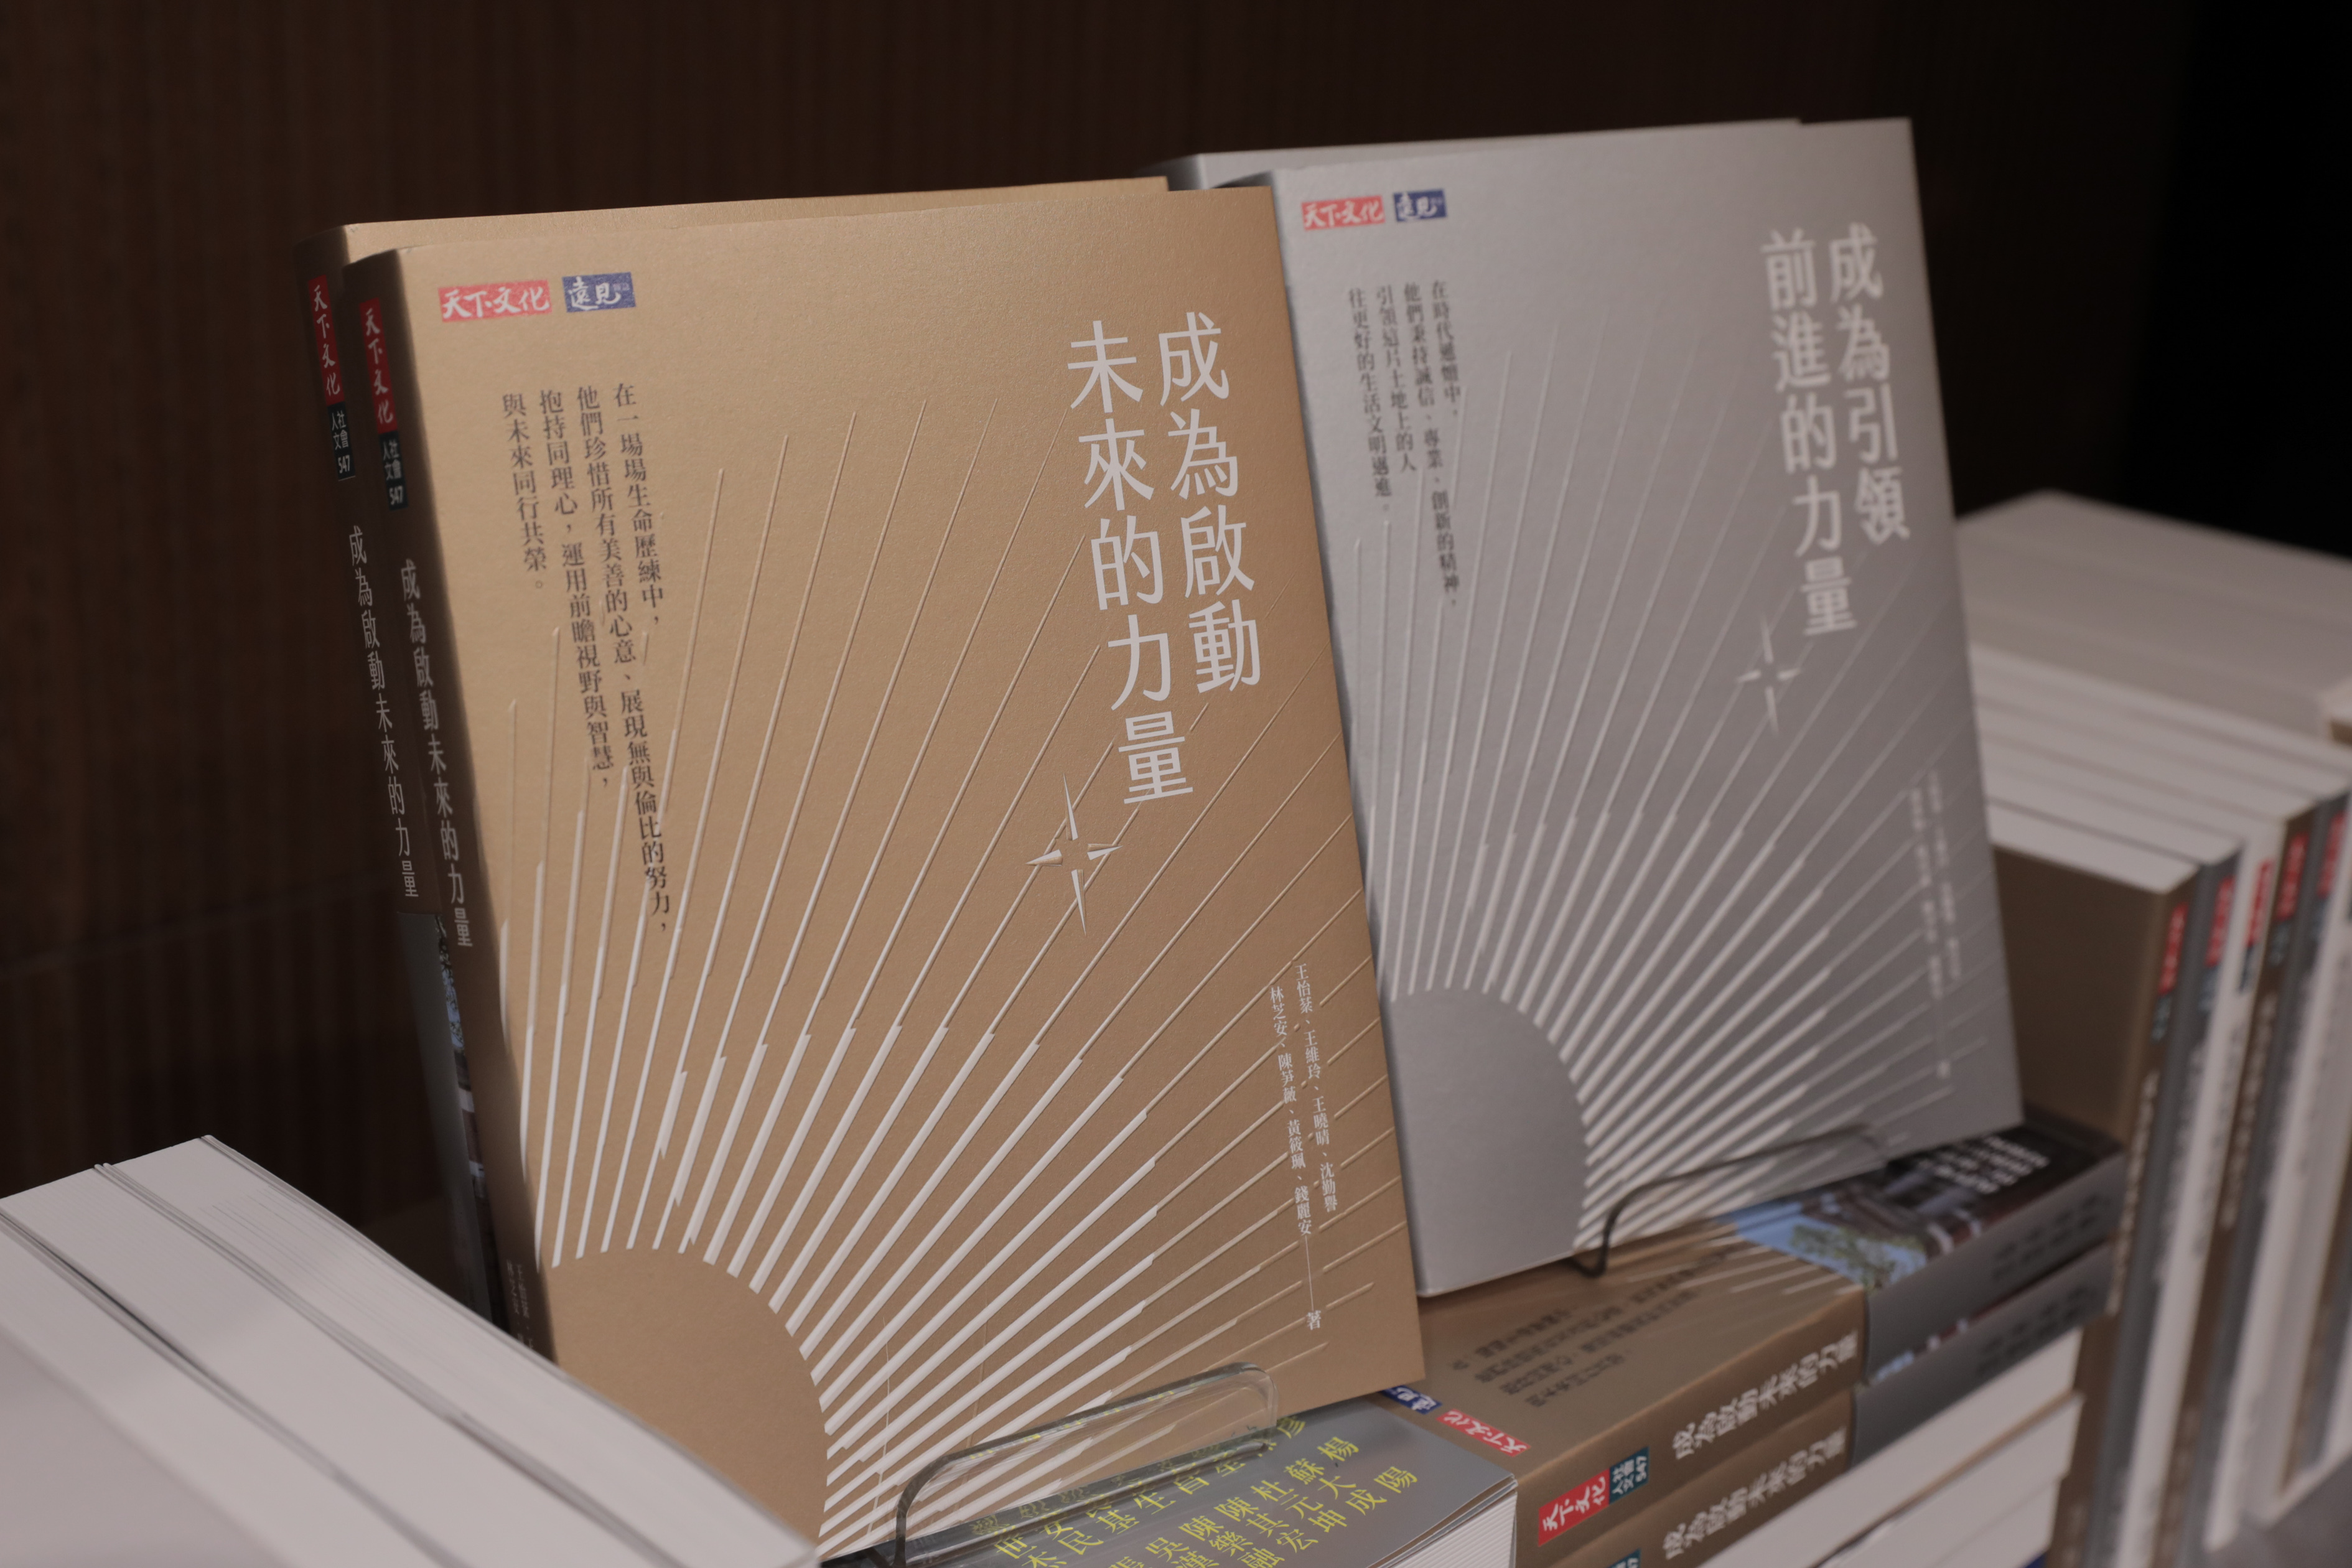 成大9日在台北誠品信義店發表兩部新書《成為引領前進的力量》、《成為啟動未來的力量》 